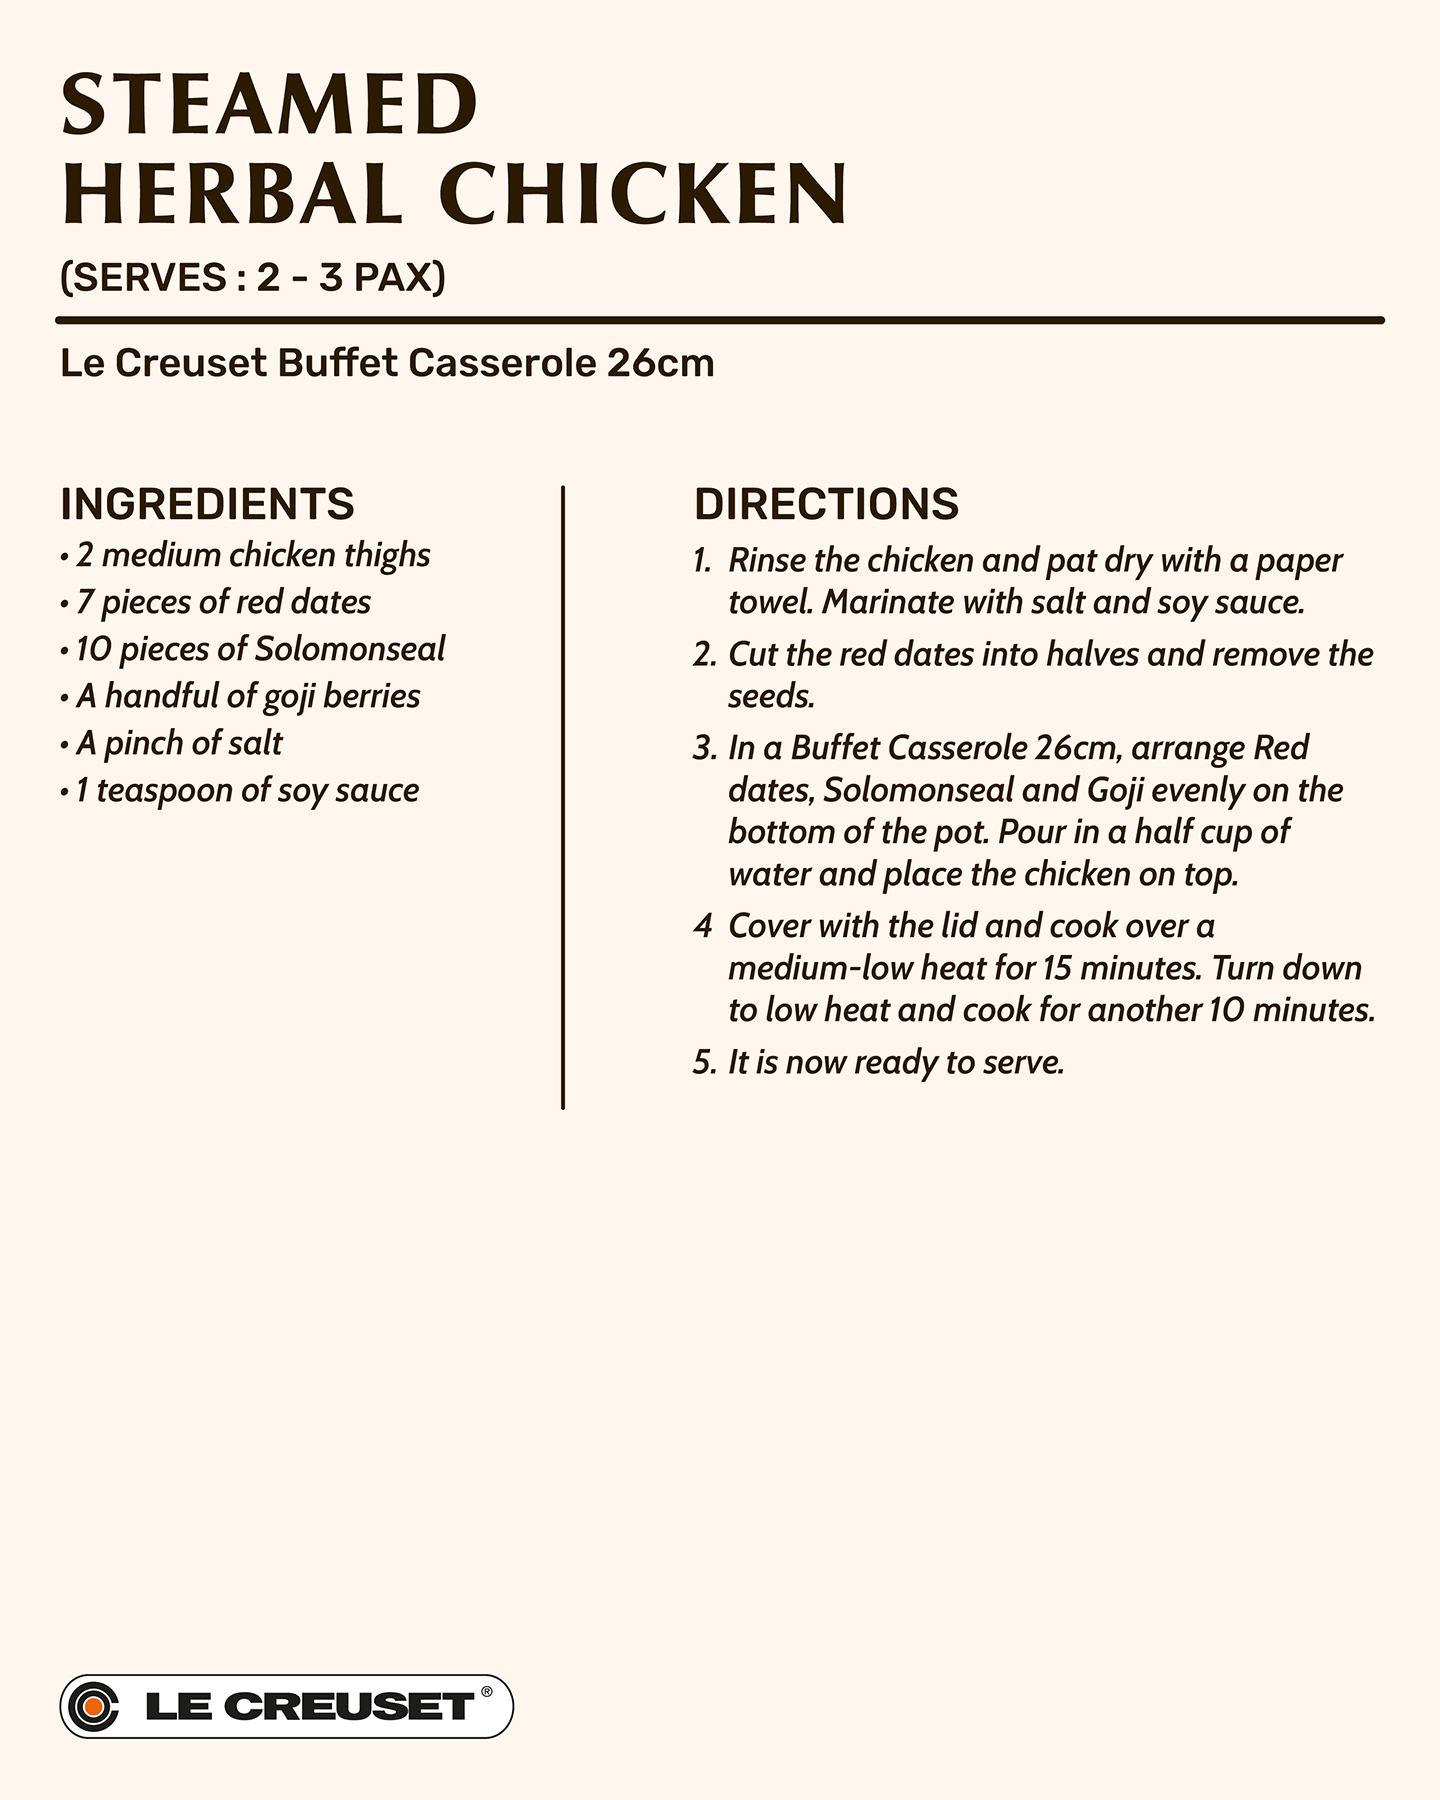 Steamed Herbal Chicken